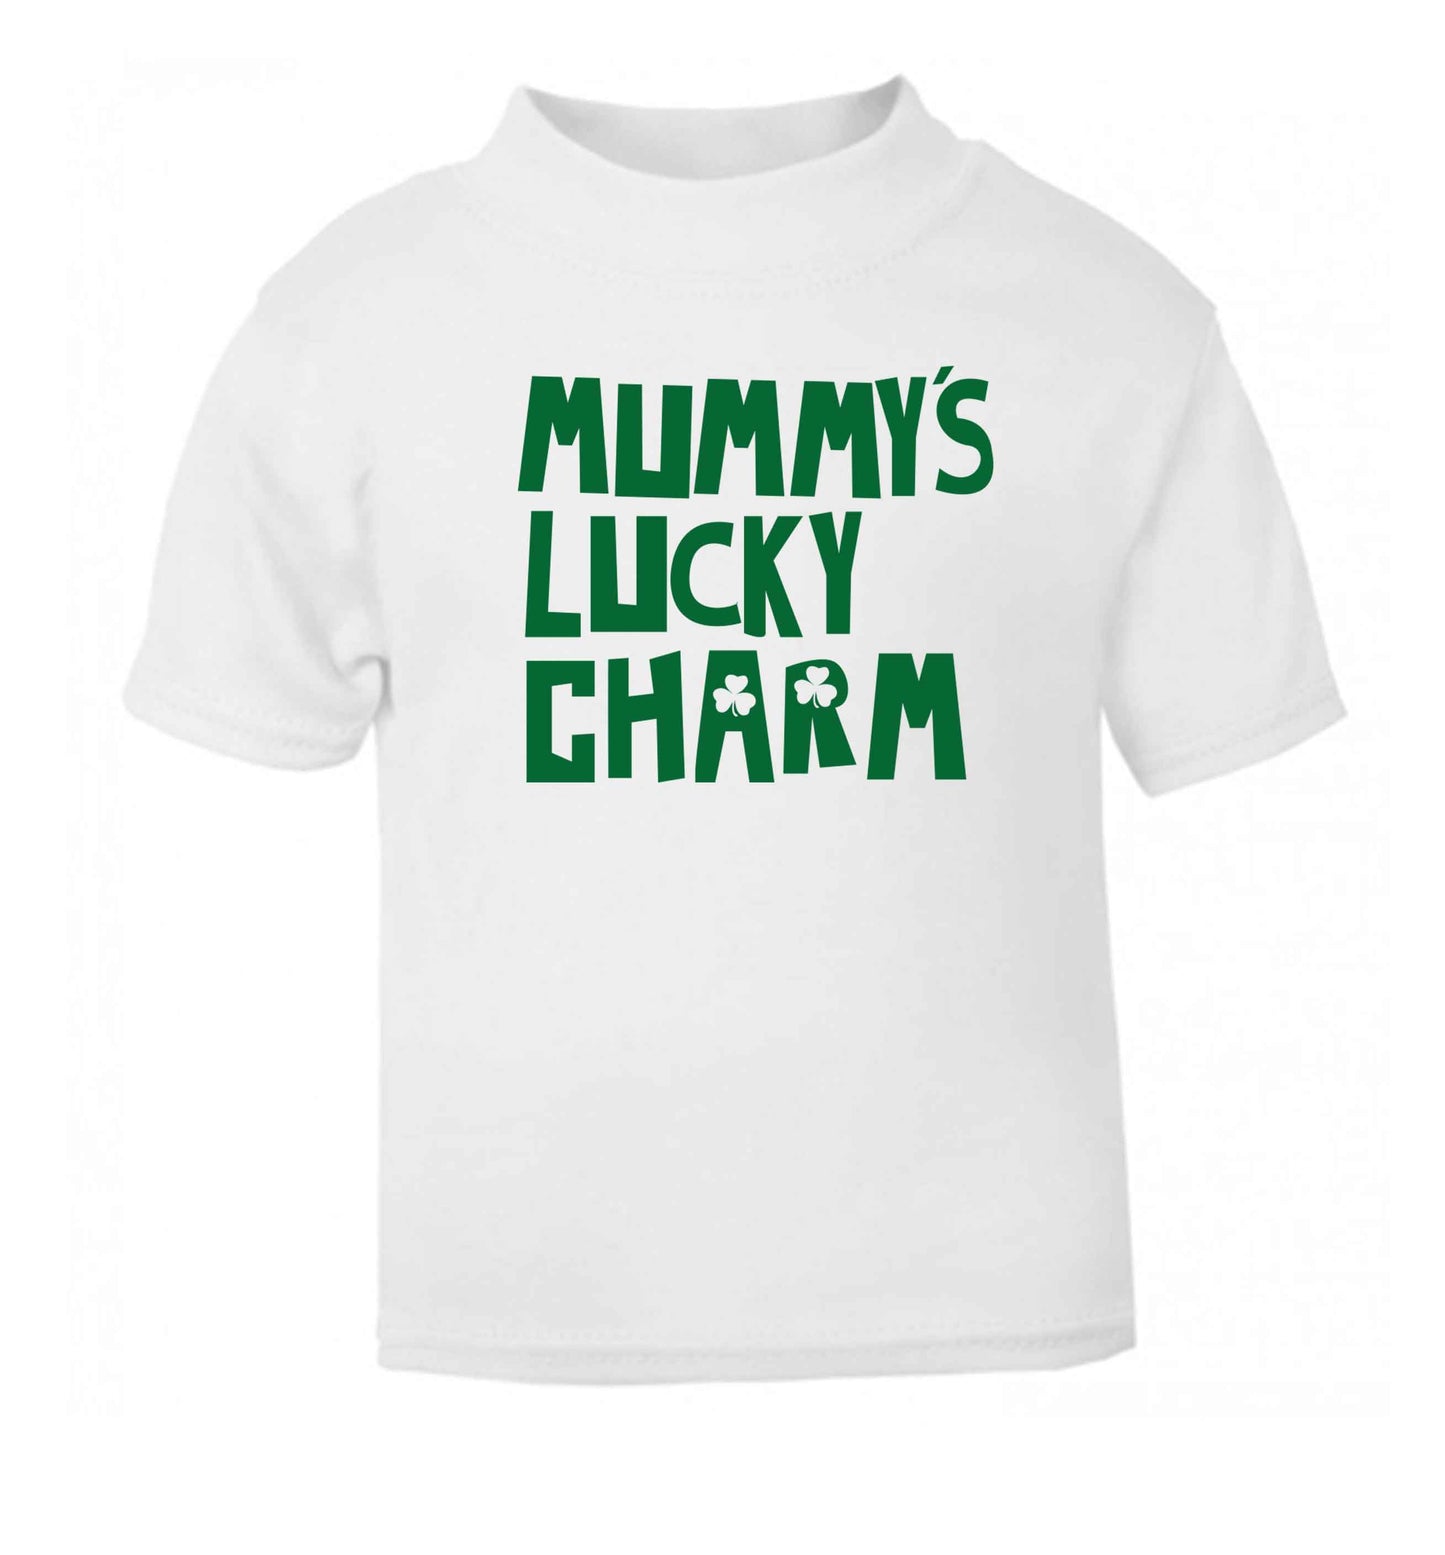 Mummy's lucky charm white baby toddler Tshirt 2 Years